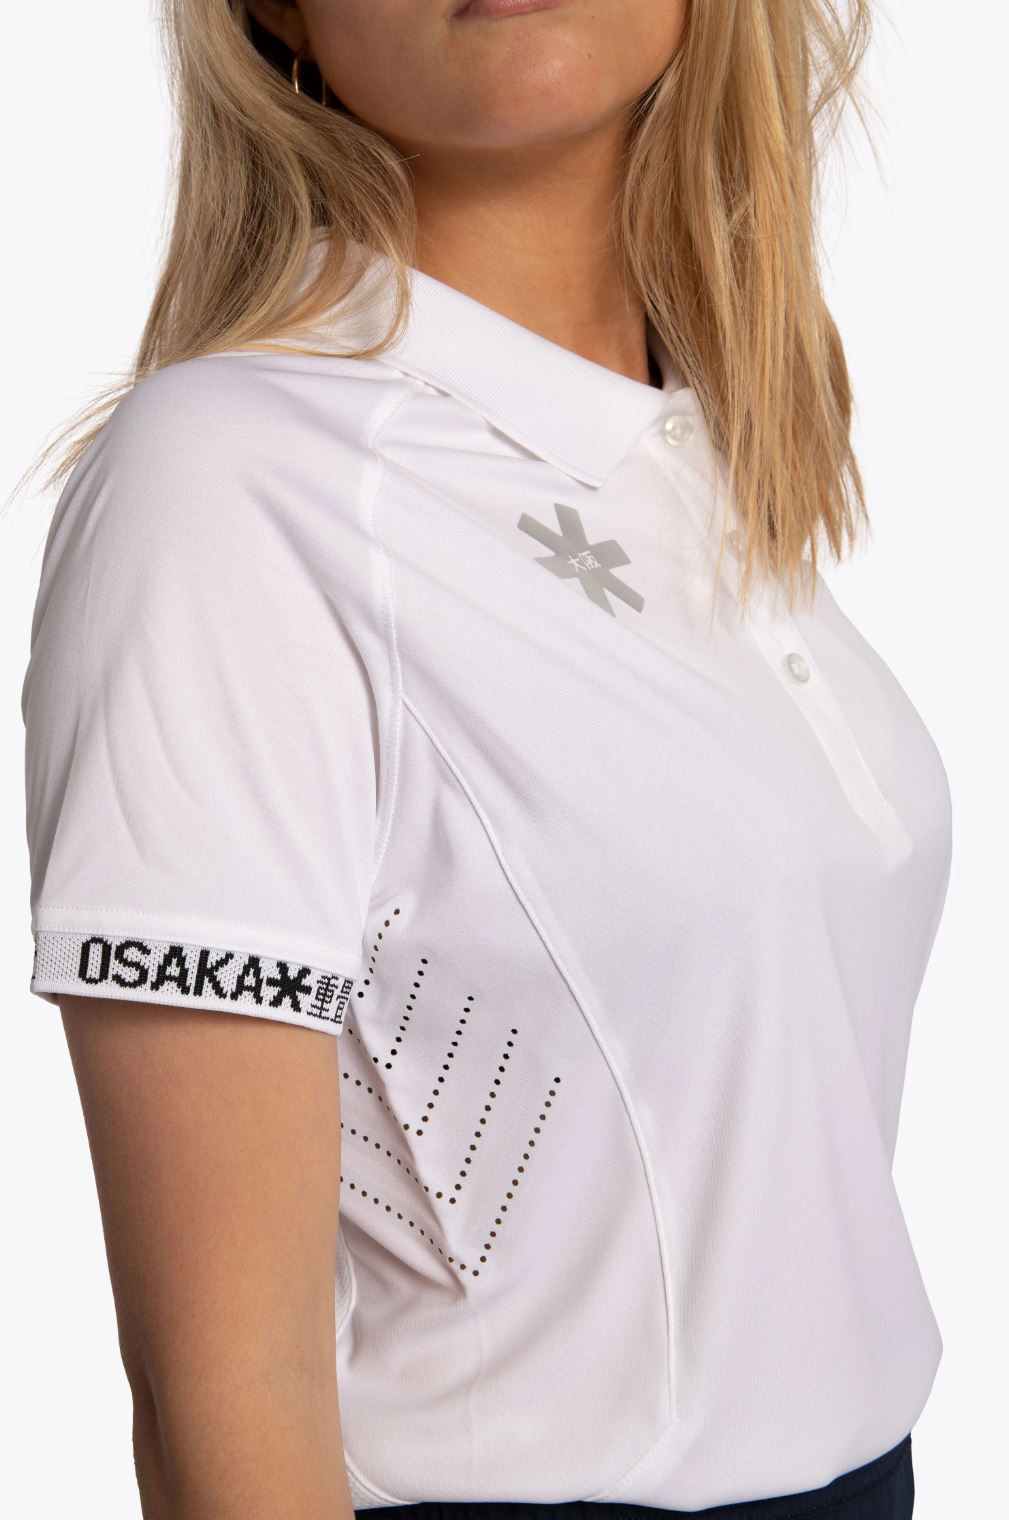 Osaka Women's Polo Jersey (Hvid) - M